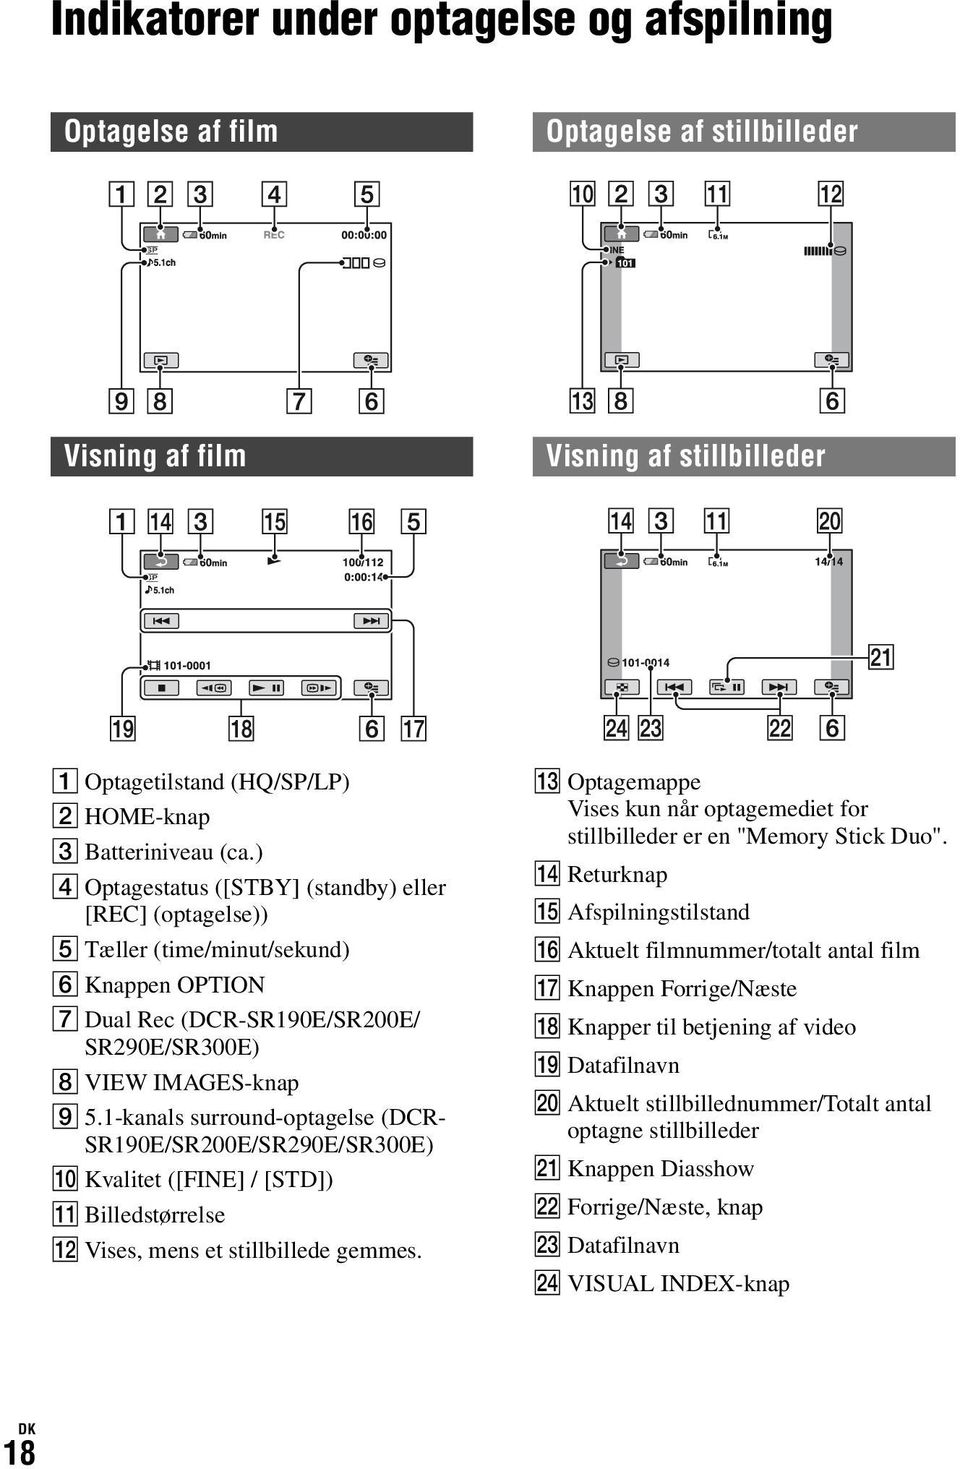 1-kanals surround-optagelse (DCR- SR190E/SR200E/SR290E/SR300E) q; Kvalitet ([FINE] / [STD]) qa Billedstørrelse qs Vises, mens et stillbillede gemmes.